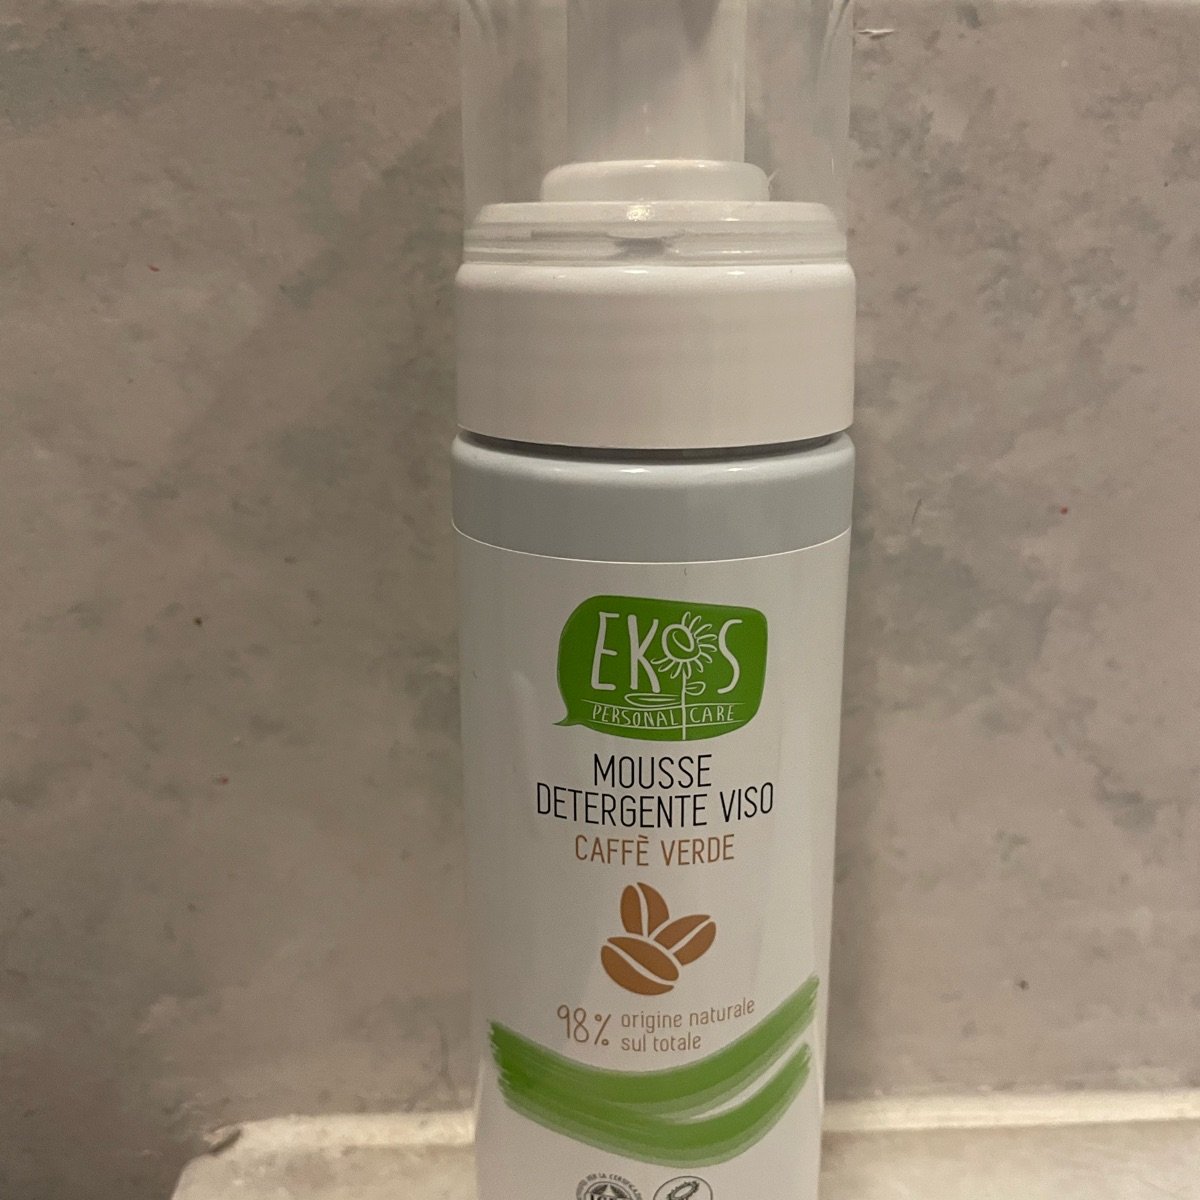 Ekos personal care Mousse Detergente Viso Caffè Verde Reviews | abillion